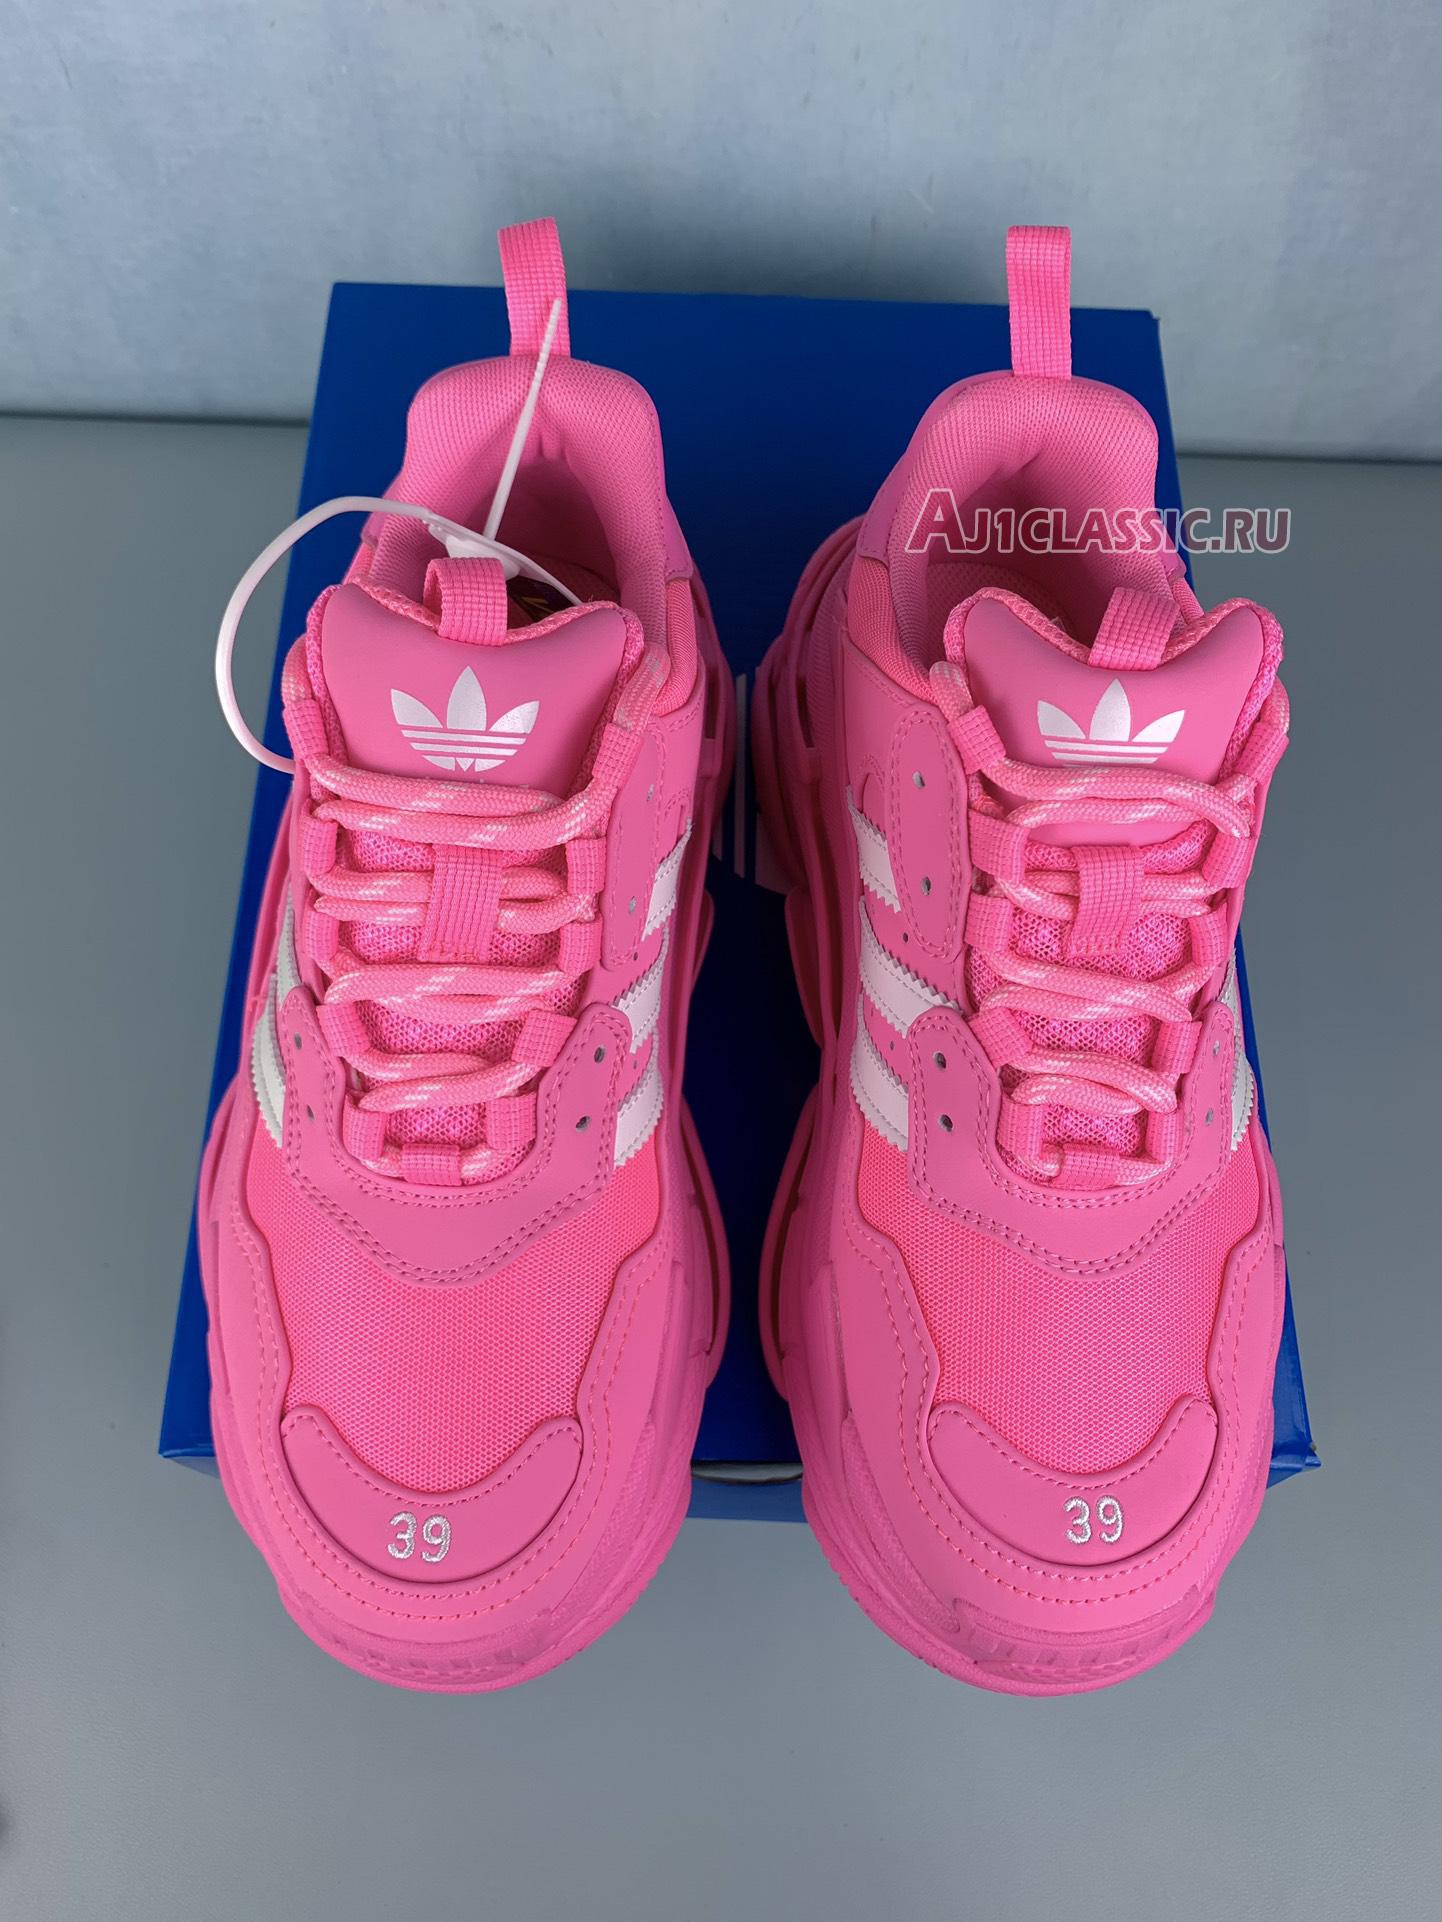 Adidas x Balenciaga Wmns Triple S Sneaker "Neon Pink" 712764 W2ZB6 5590